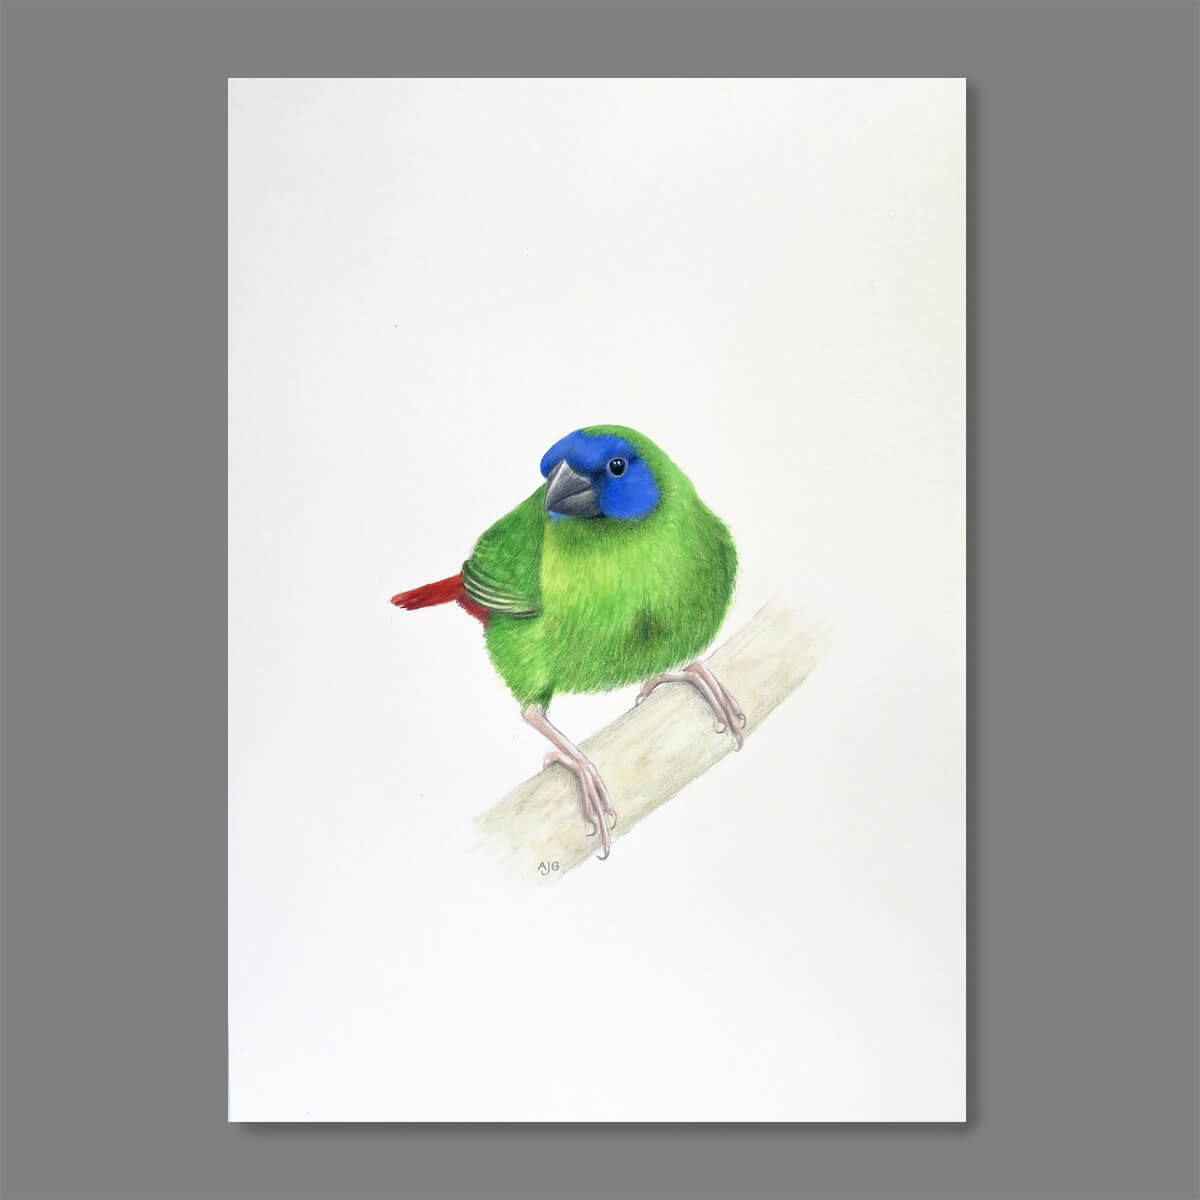 Gouache painting of a Blue-faced Parrot Finch by bird artist Amanda Gosse